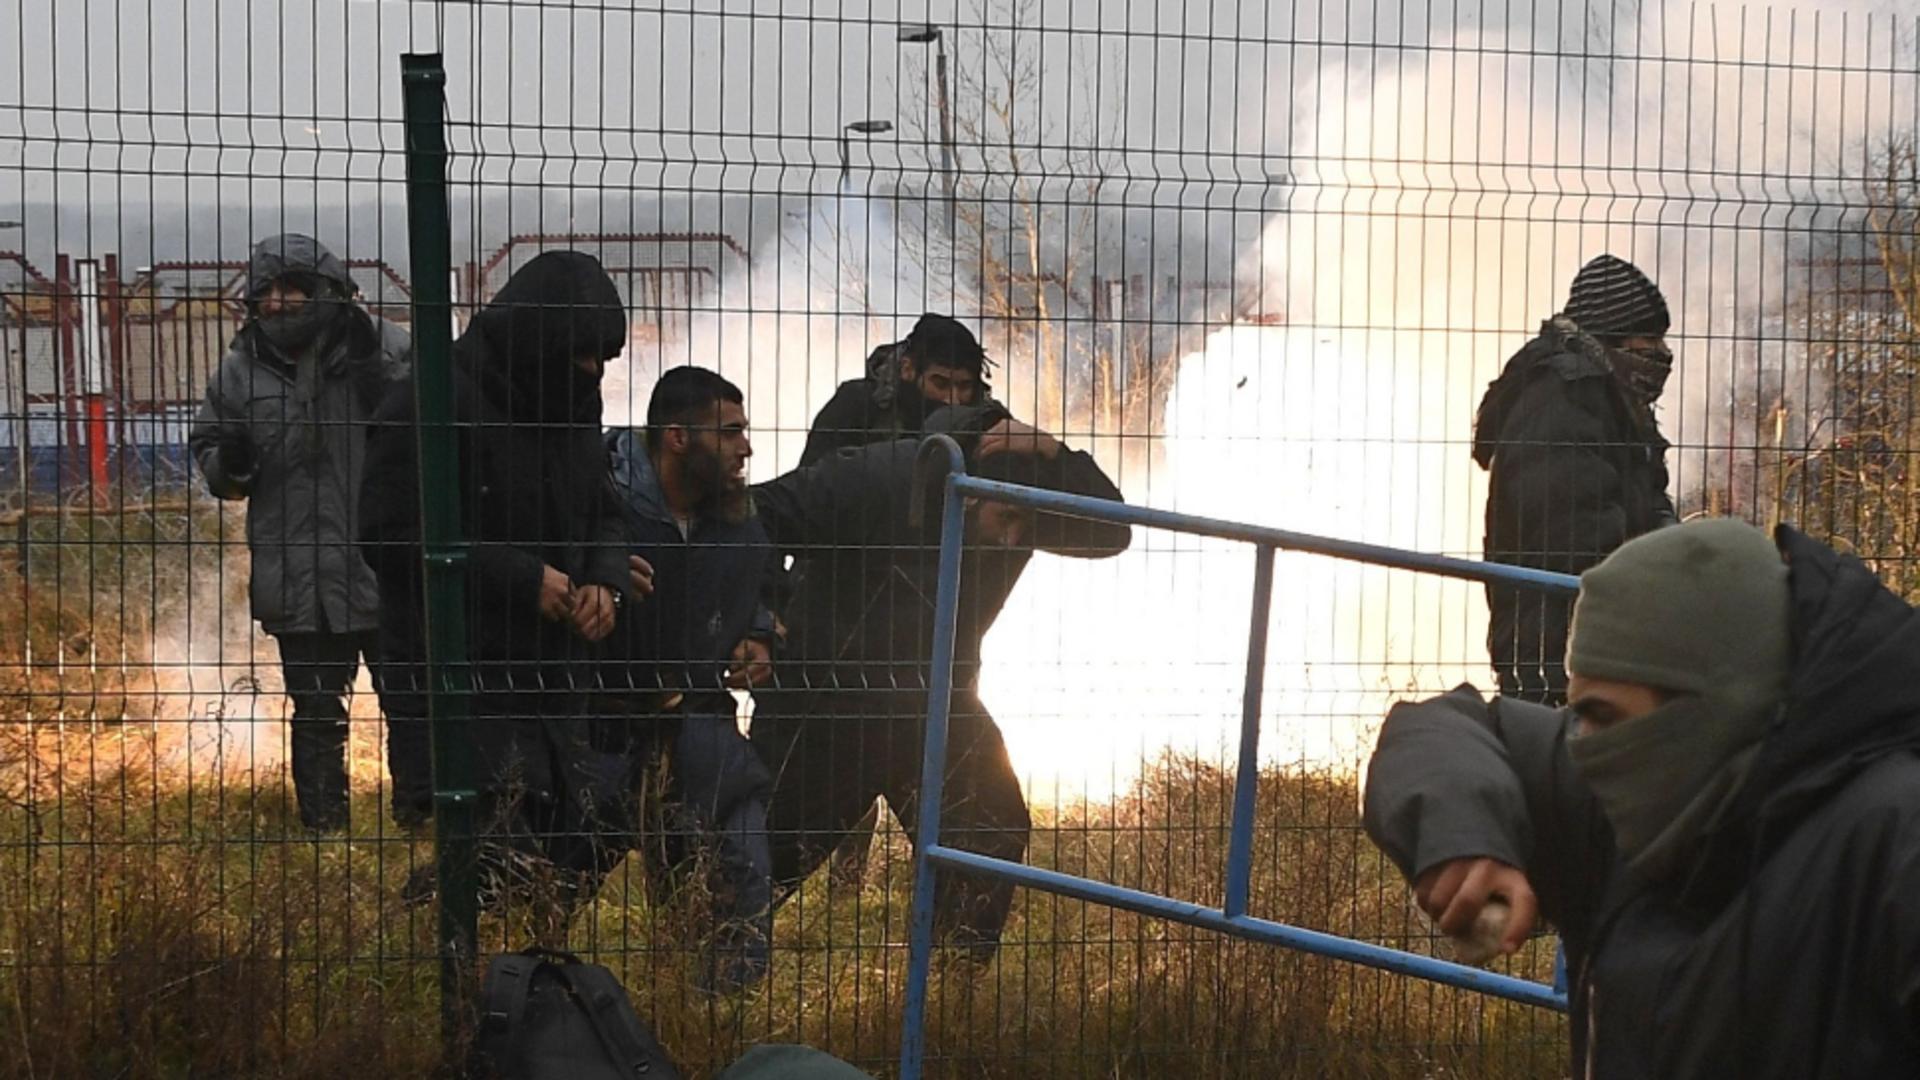 Criză umanitară la granița dintre Belarus și Polonia. Foto: Profi Media